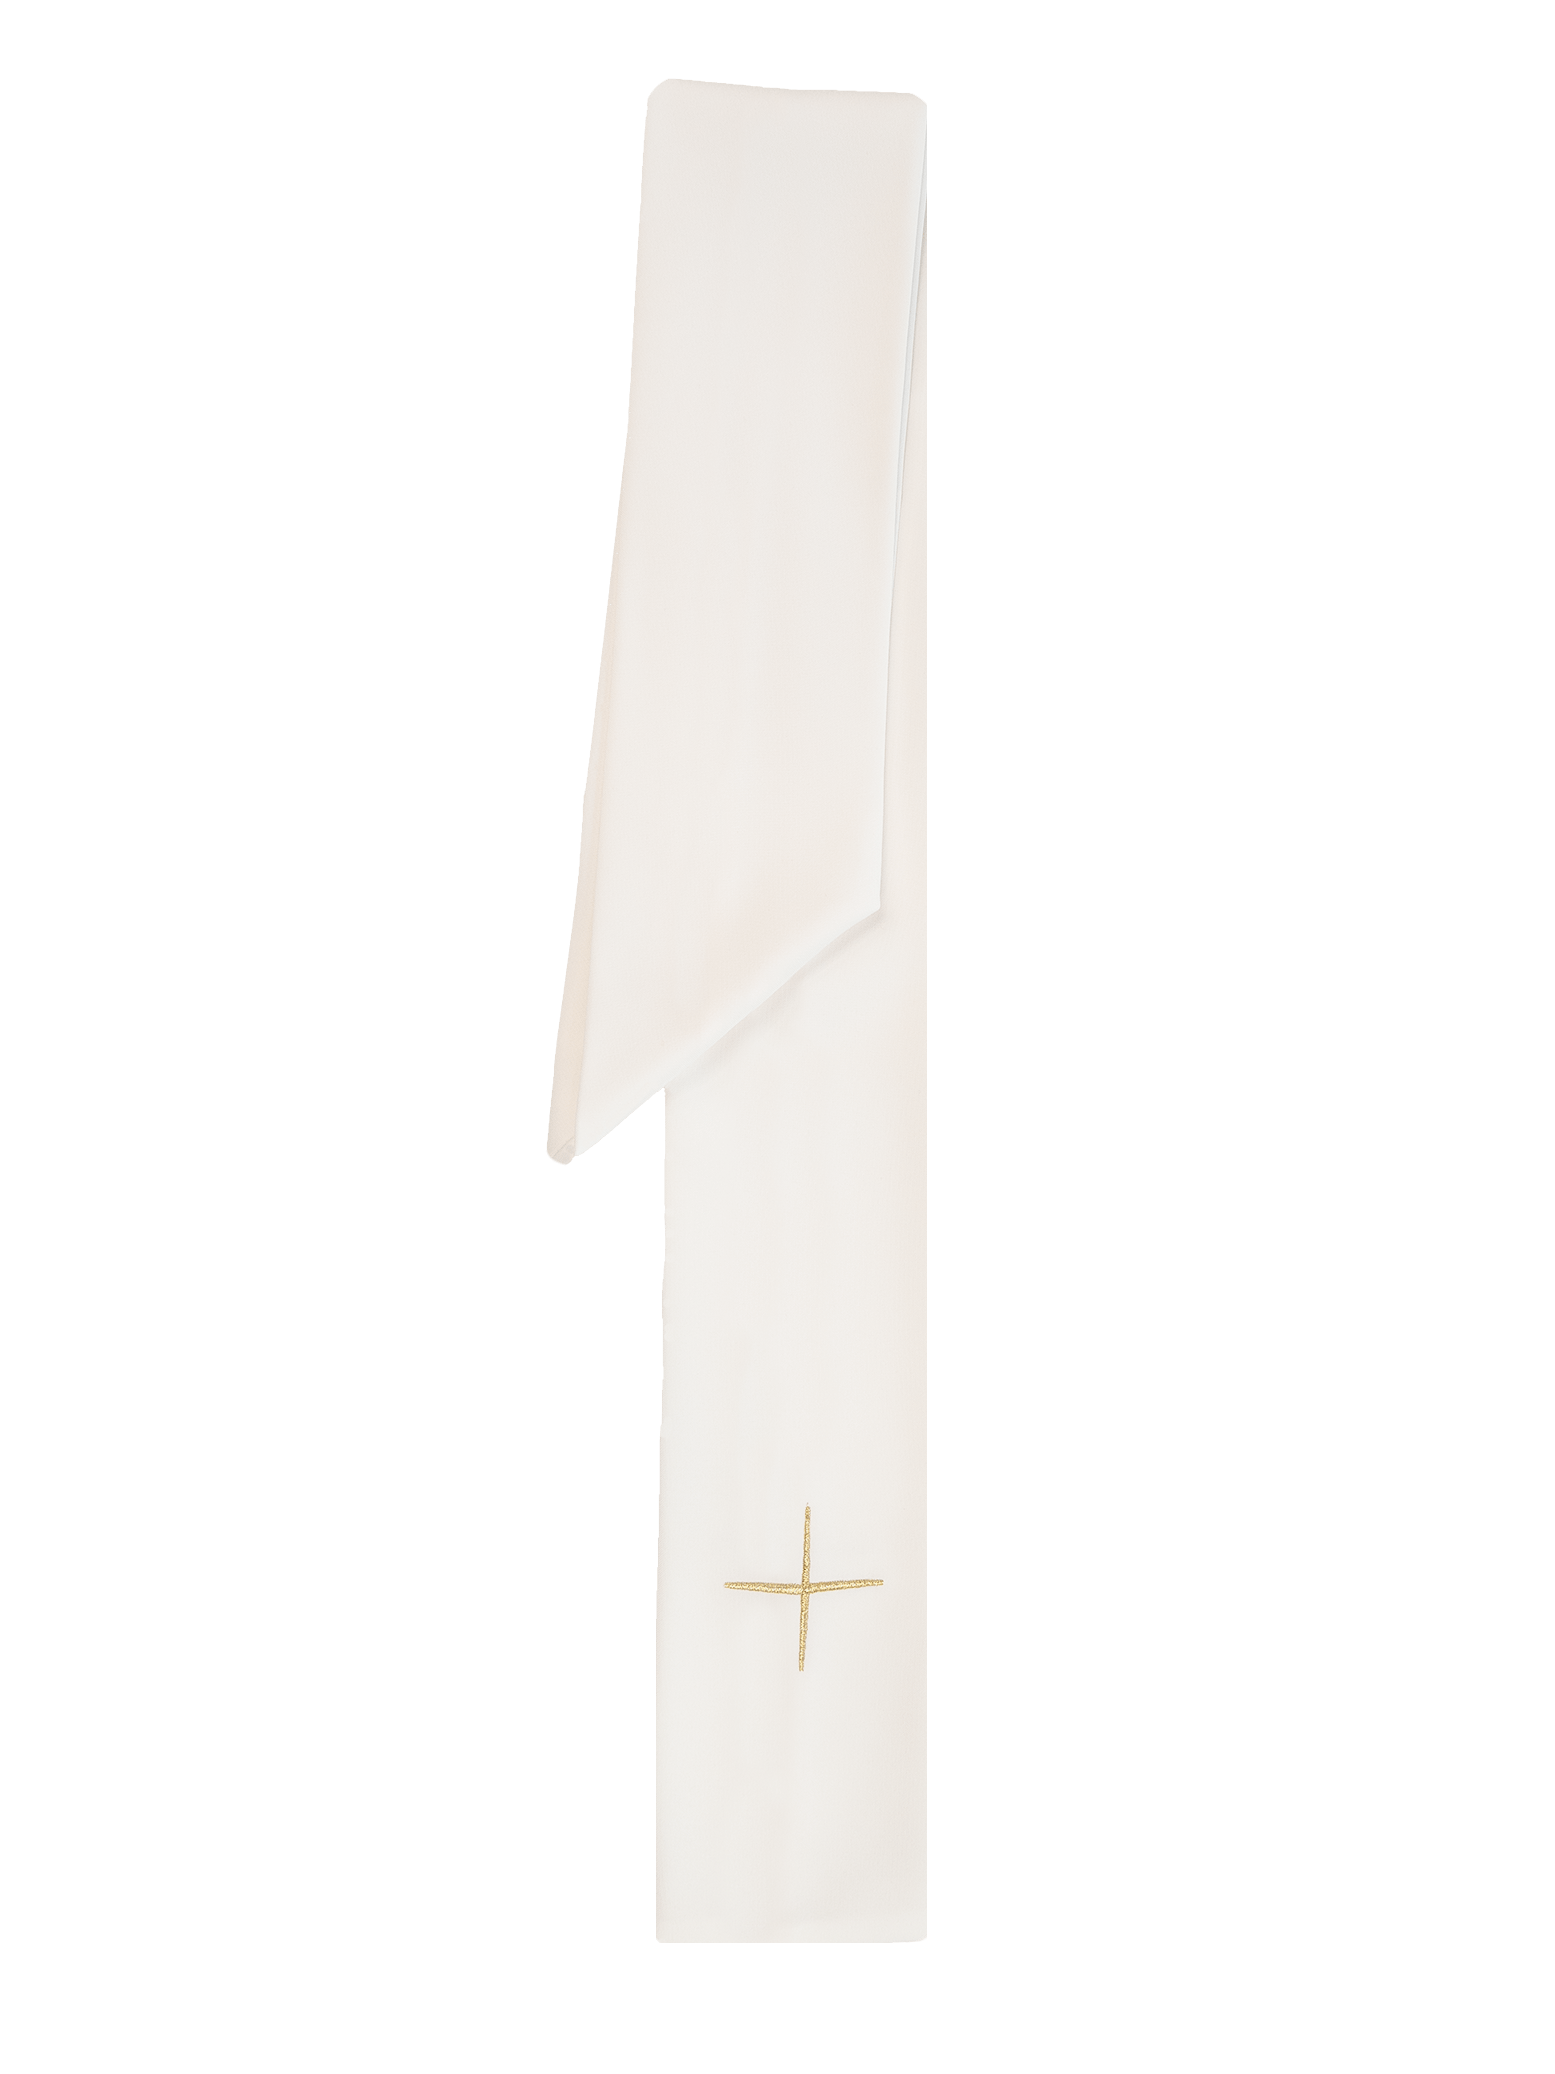 Ornat haftowany z symbolem krzyża KOR/002 Ecru - ORNATY.PL